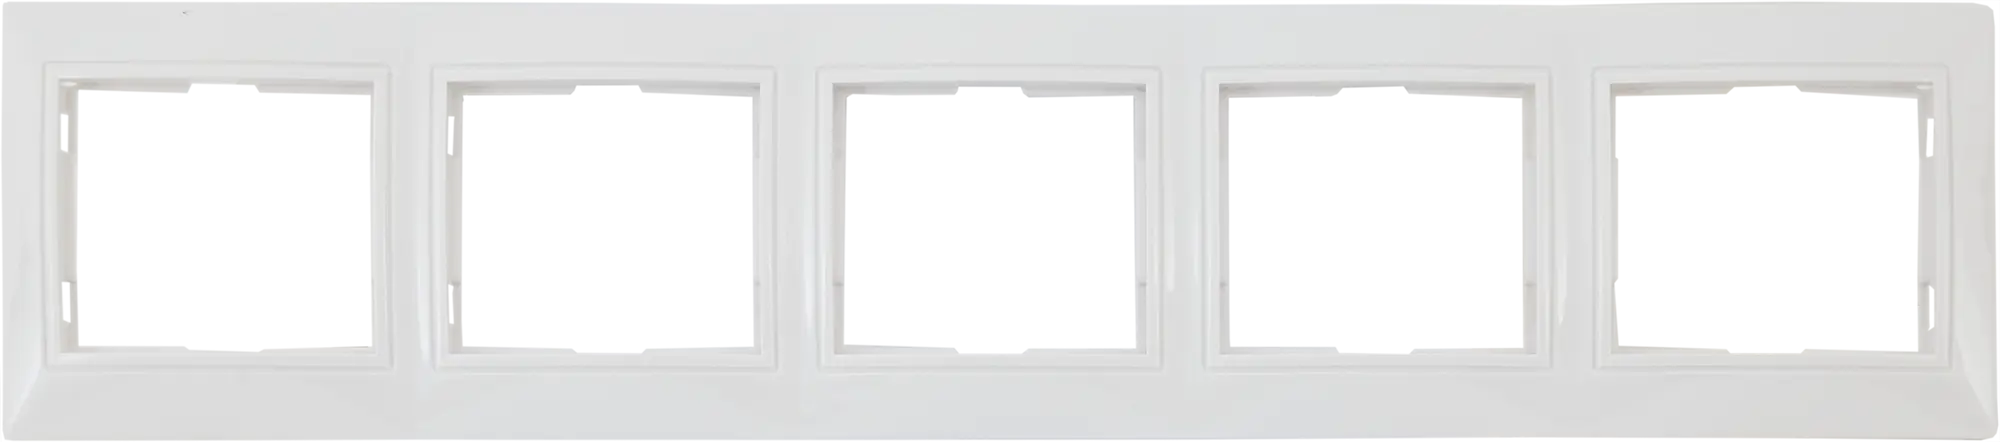 Рамка для розеток и выключателей горизонтальная Таймыр 5 постов, цвет белый трехместная горизонтальная рамка stekker